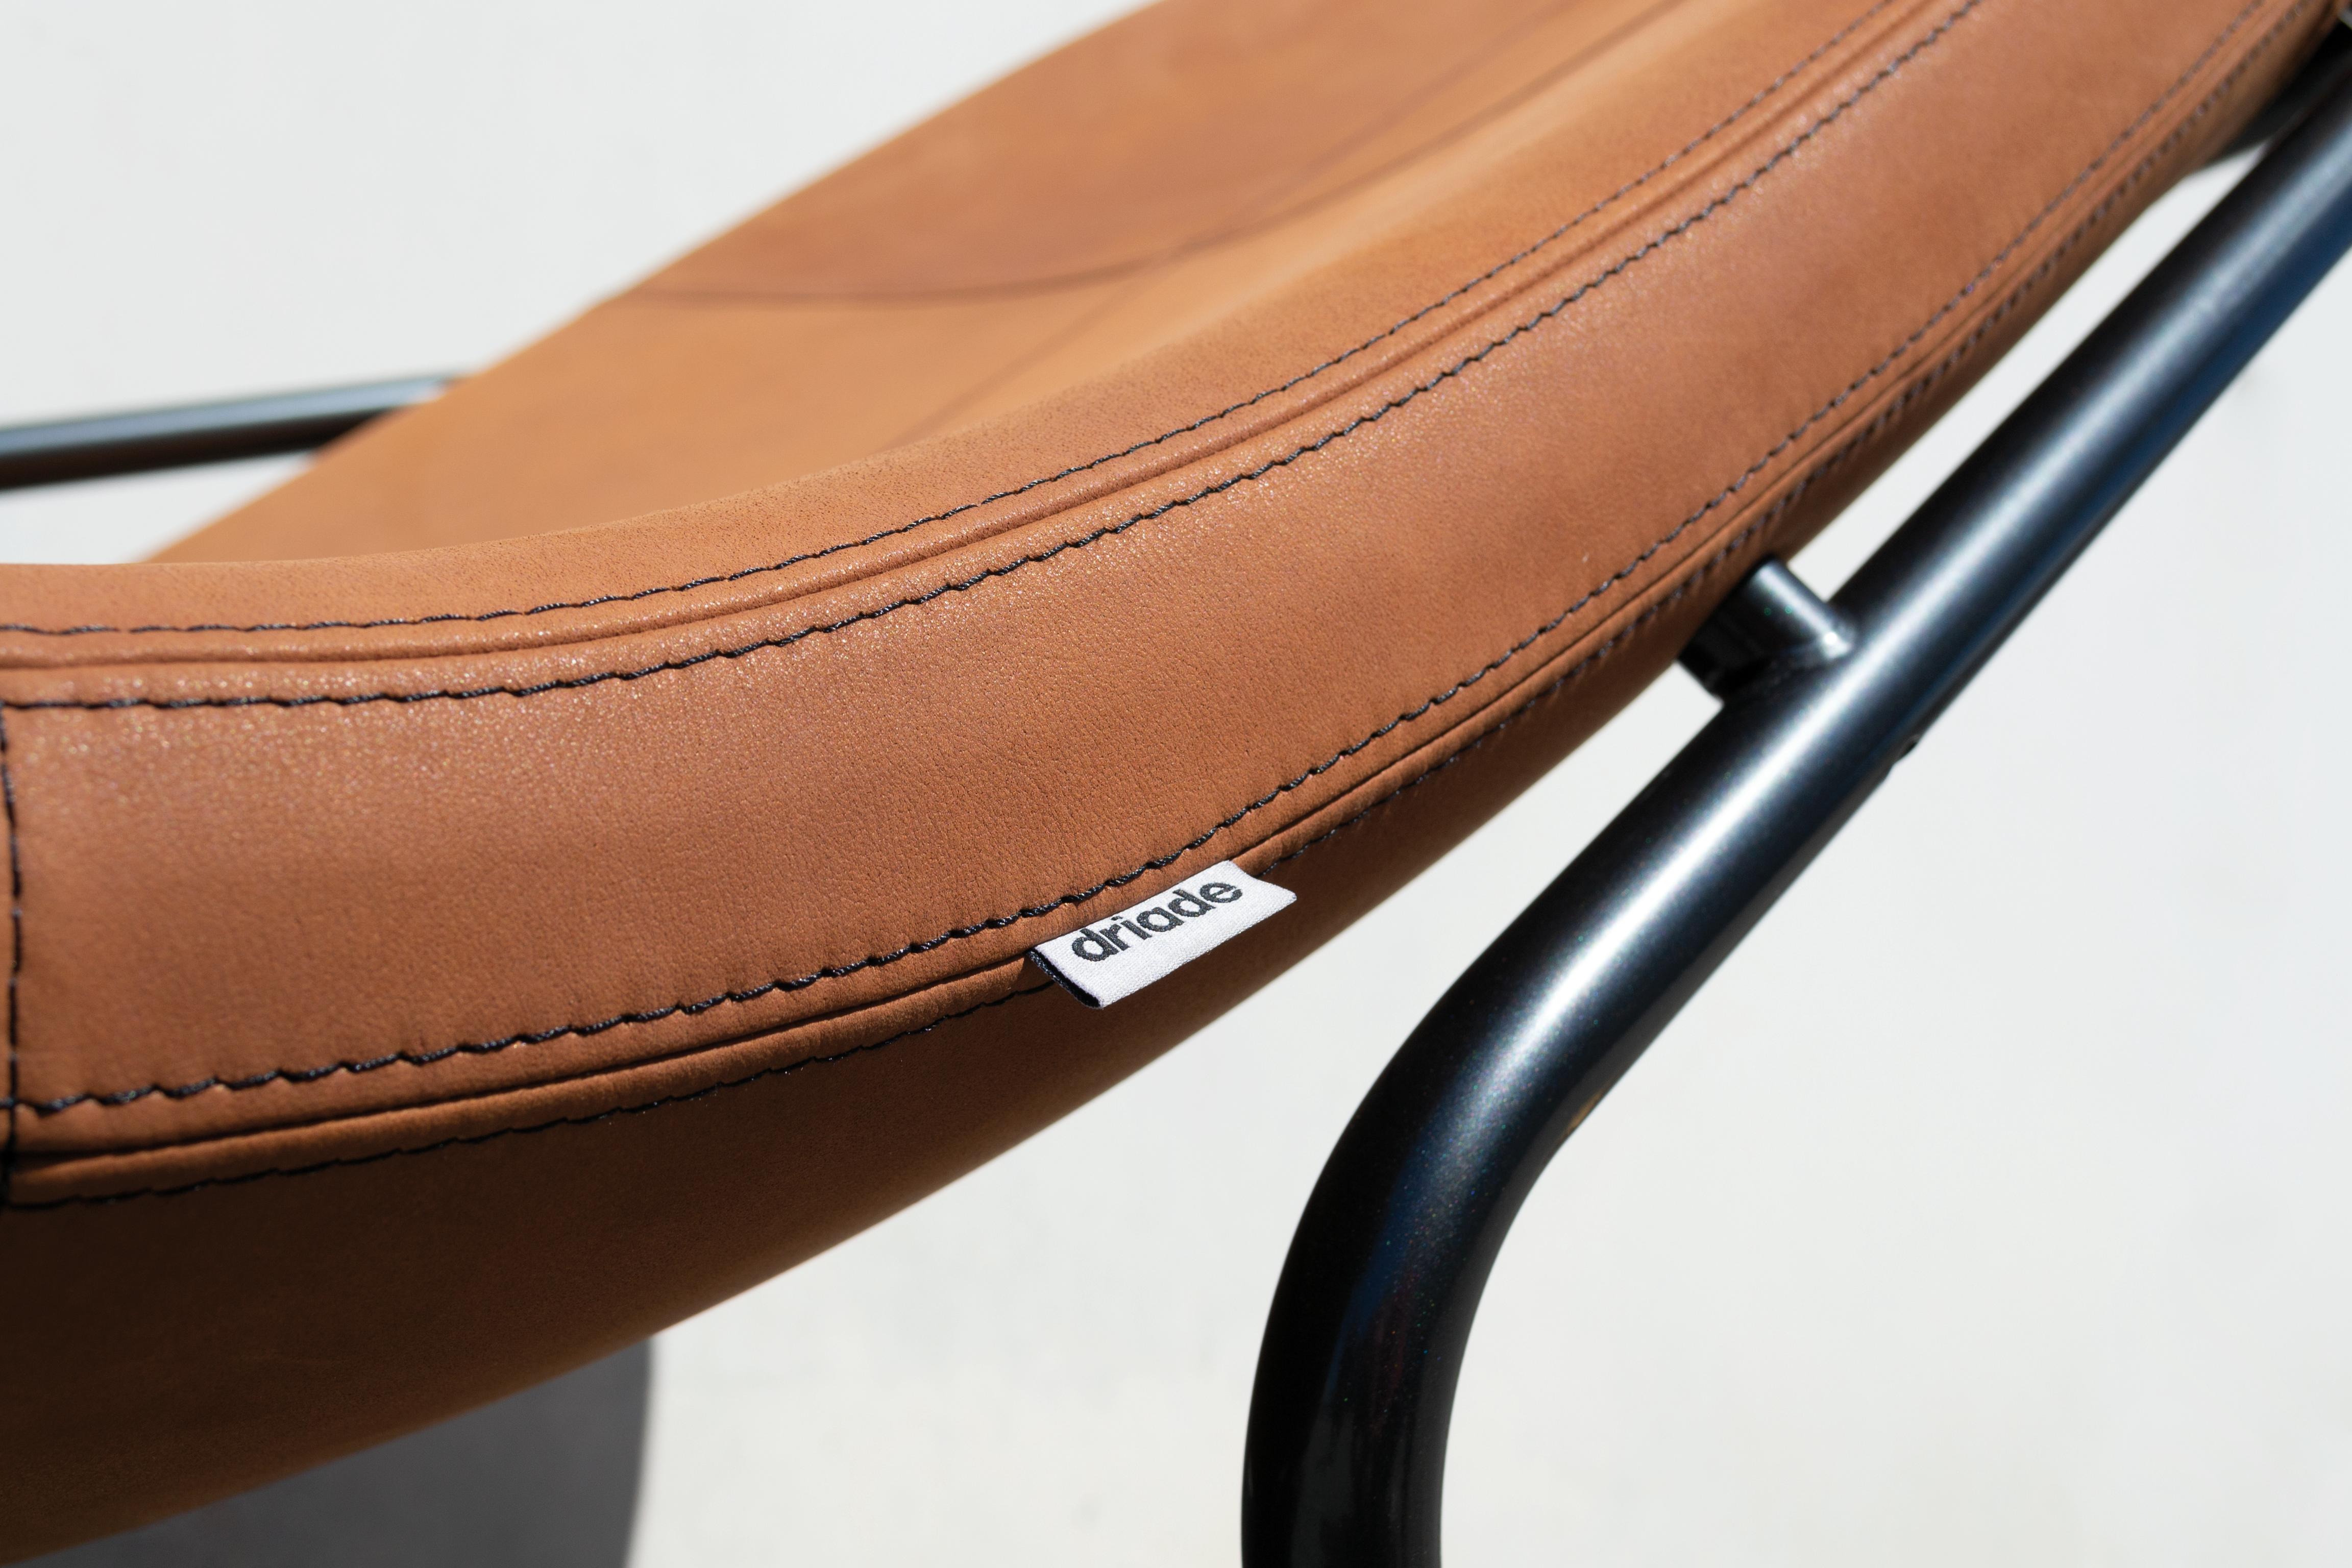 Nous avons conçu la chaise longue Wireflow en créant une coque souple et flexible, évoquant des lignes simples et fluides, avec un accent particulier sur l'ergonomie et le confort. L'intention de la conception du cadre métallique est de créer une